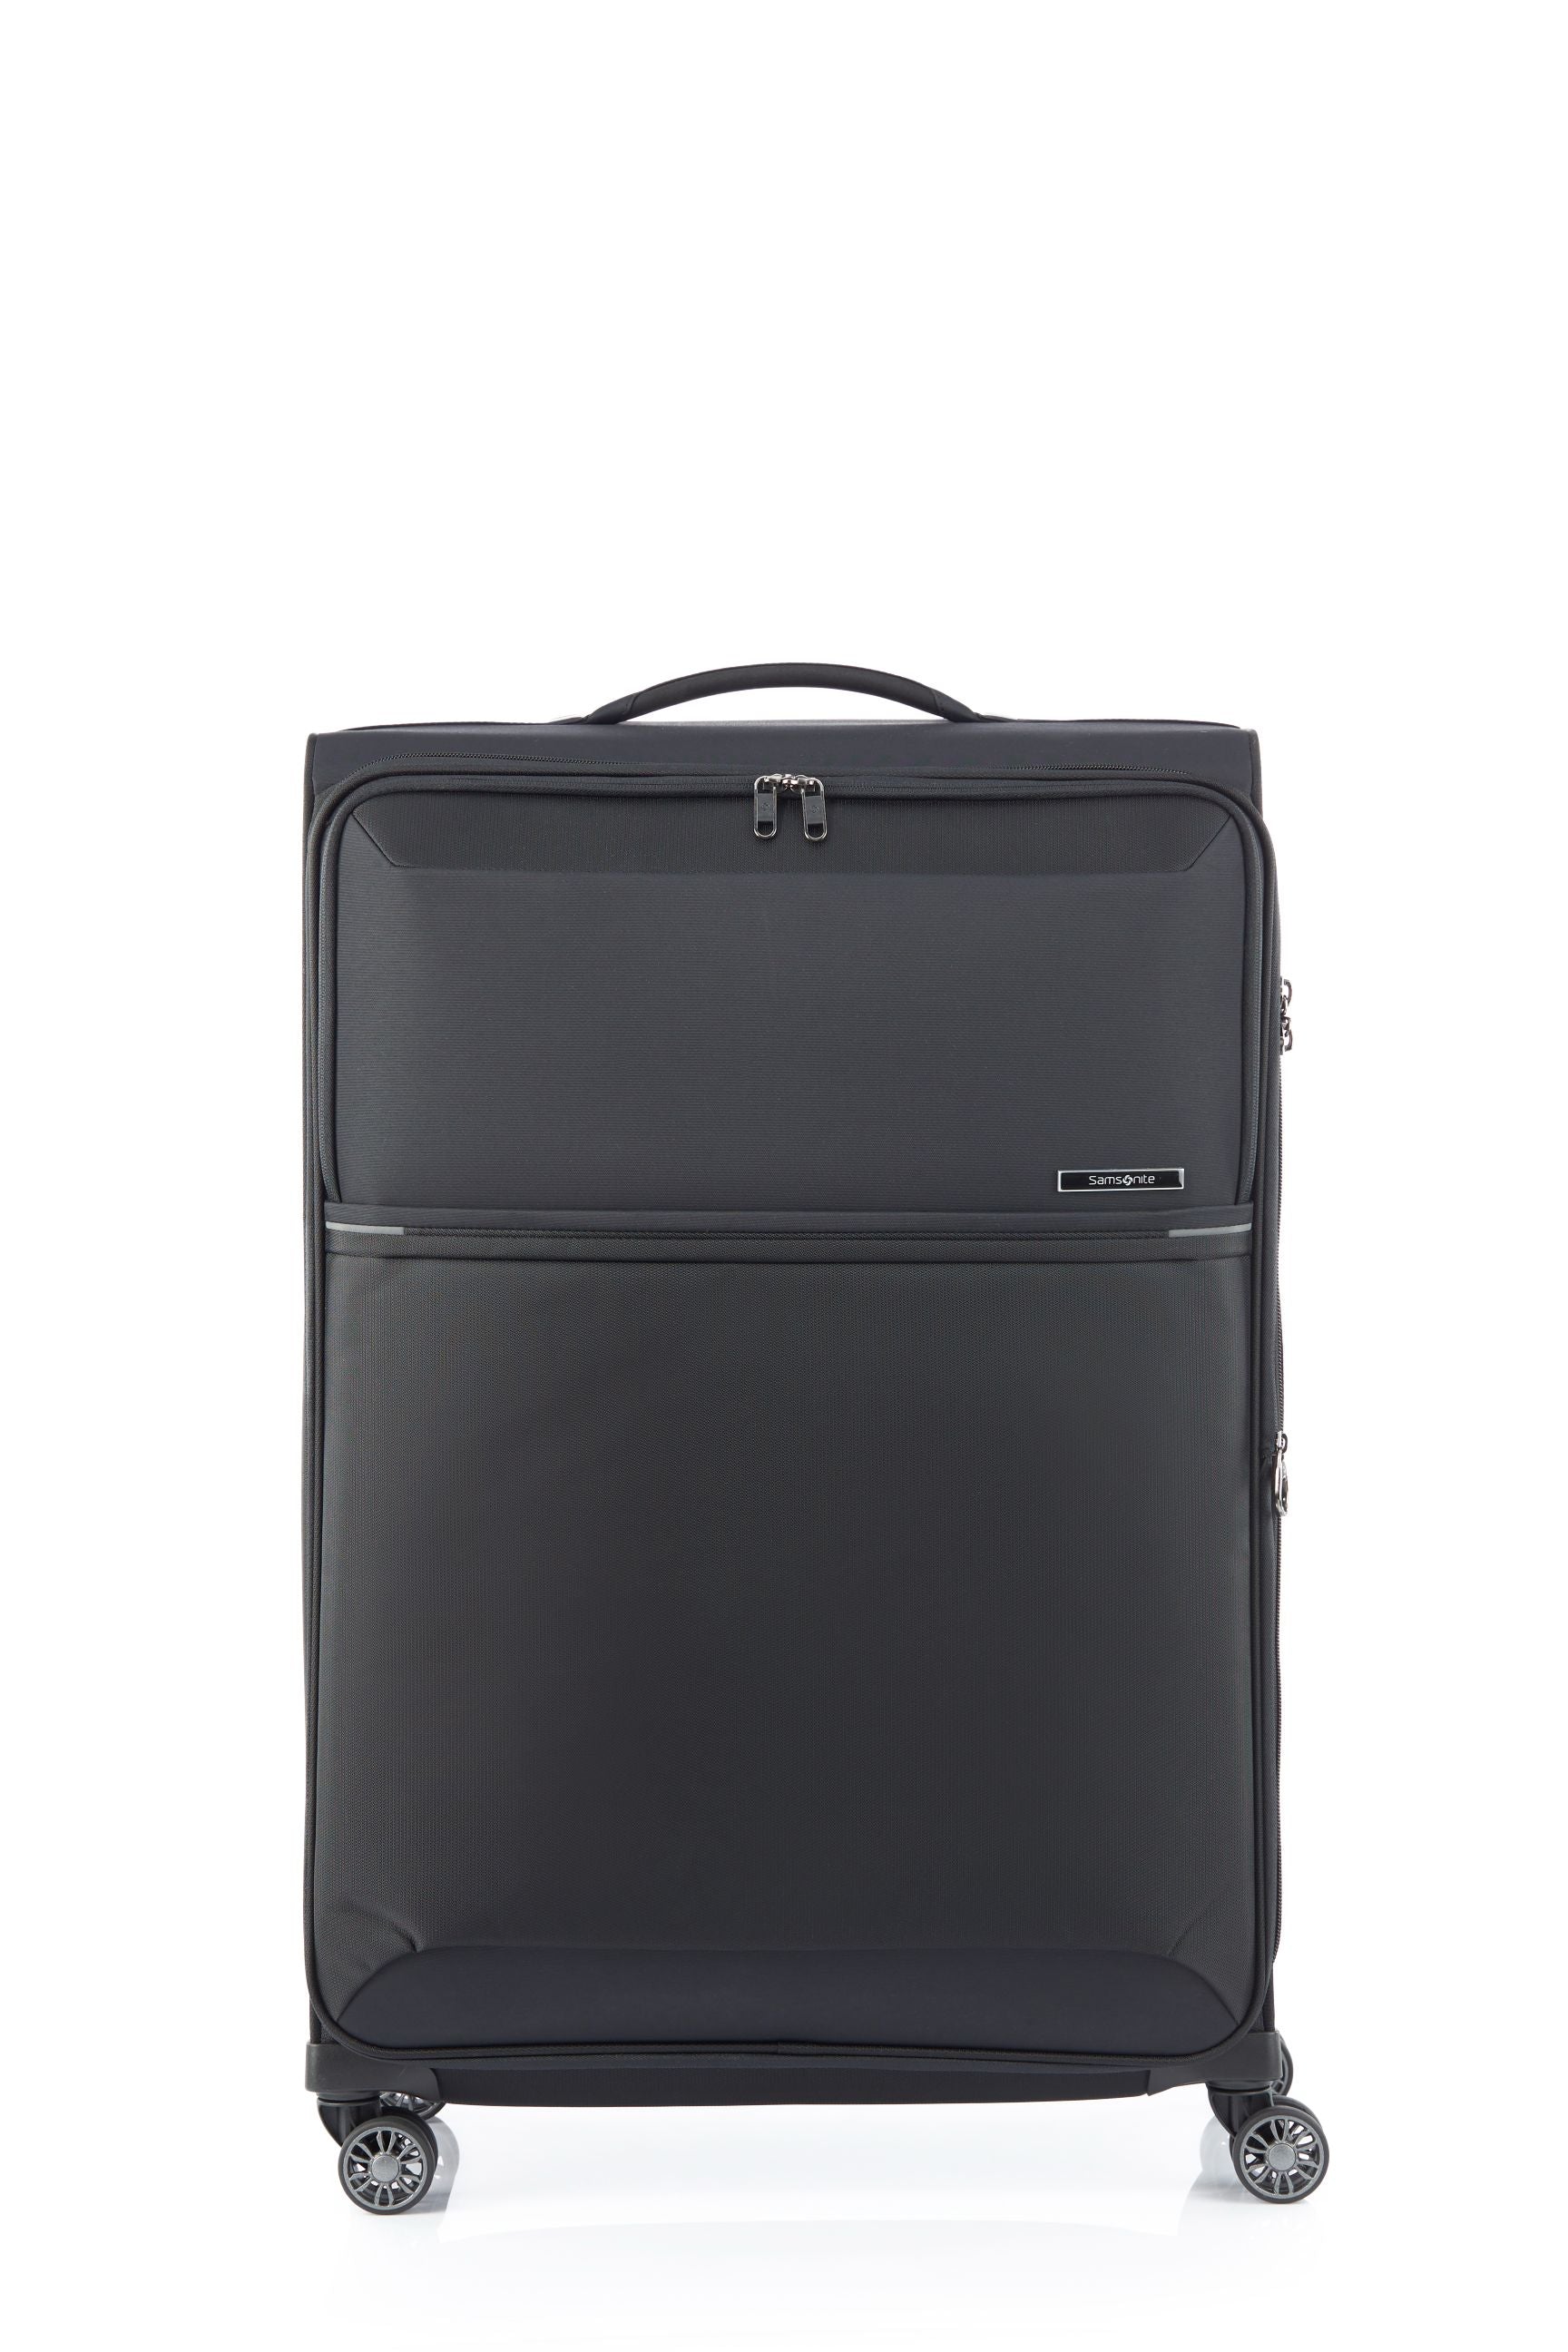 Samsonite - 73HR 78cm Large Suitcase - Black-2